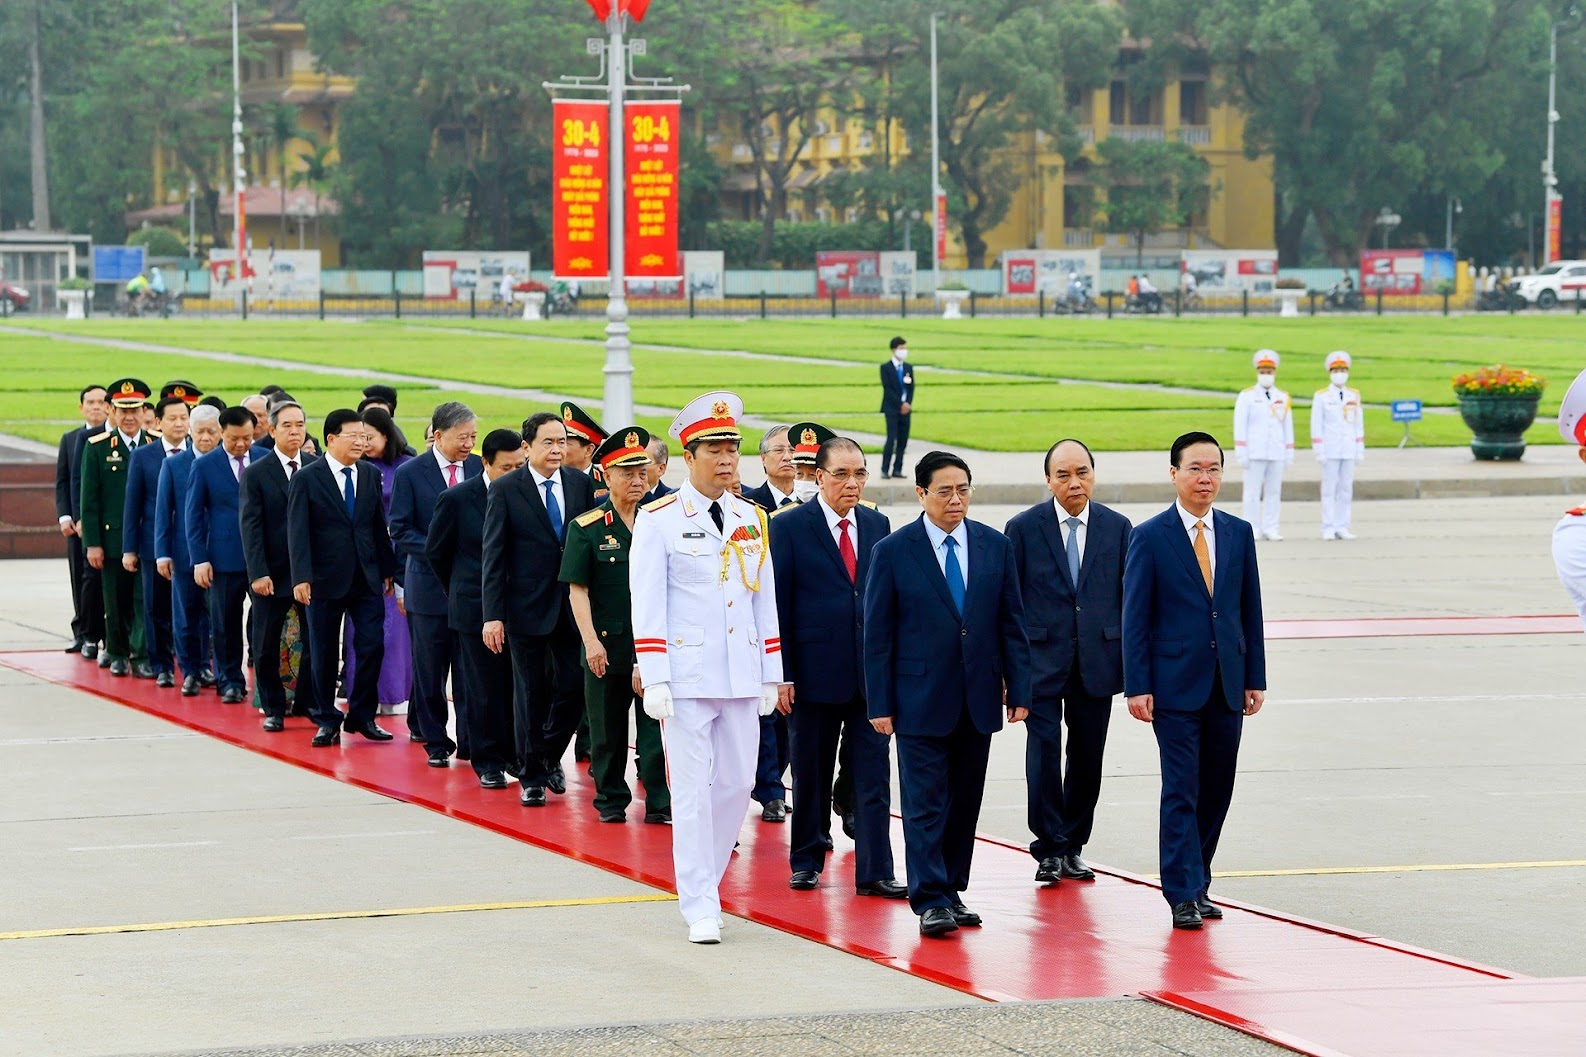 Lãnh đạo Đảng, Nhà nước vào Lăng viếng Chủ tịch Hồ Chí Minh, dâng hương tưởng niệm các Anh hùng liệt sĩ - Ảnh 1.